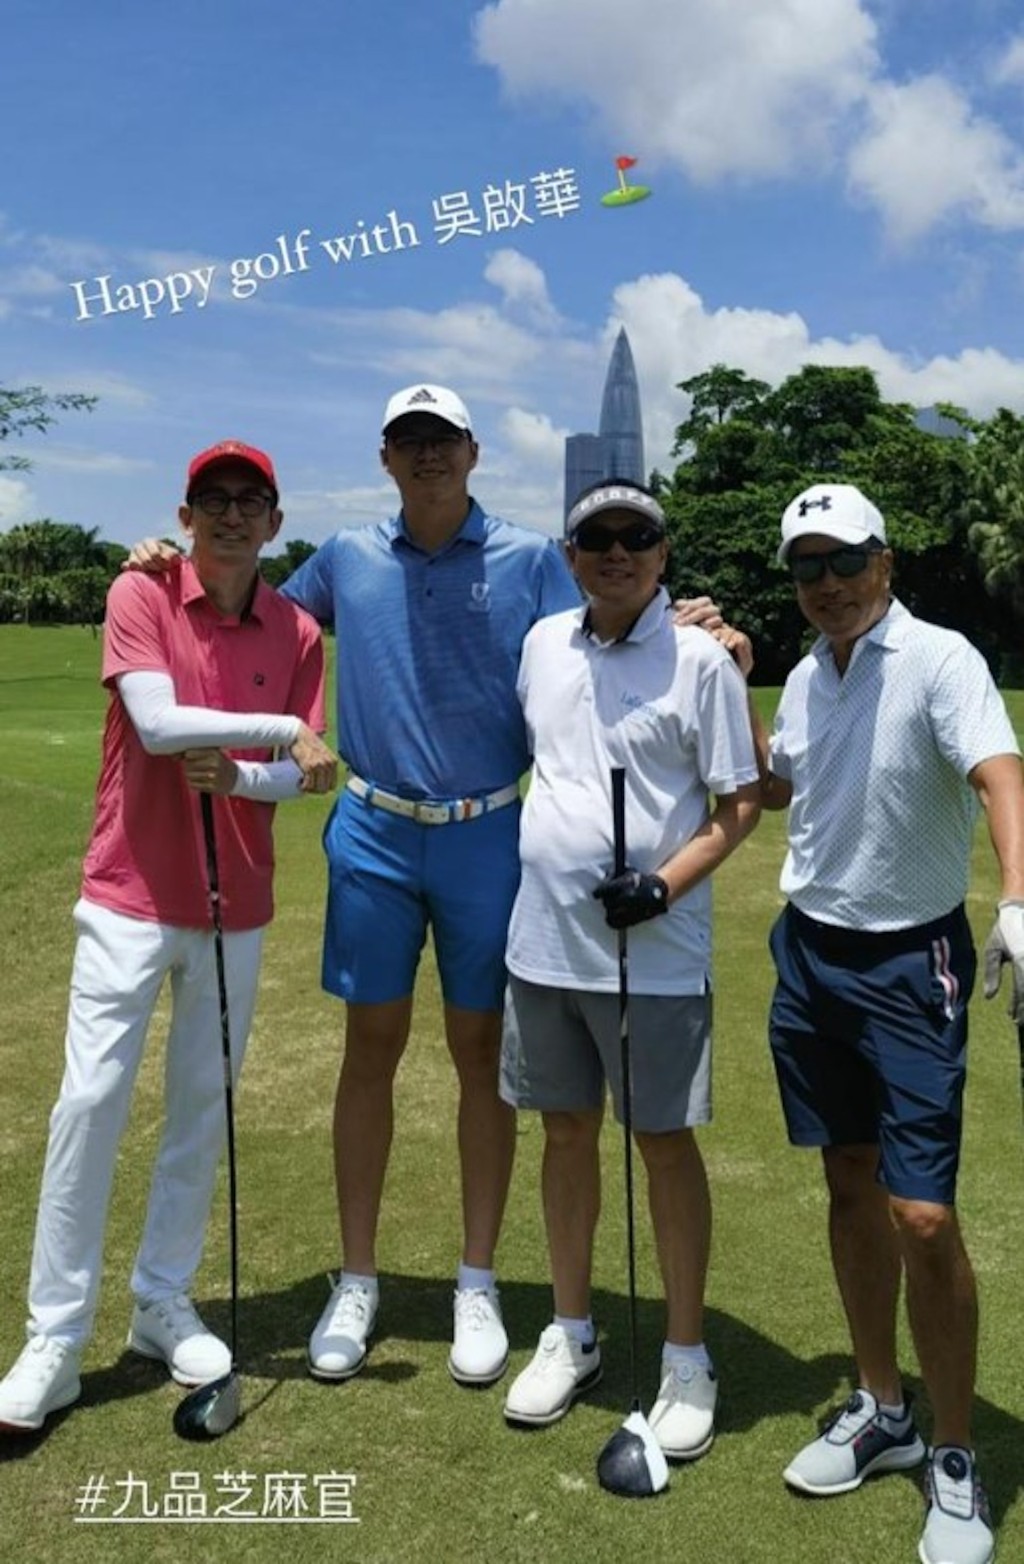 林浩贤（左二）日前同吴启华（左）打高尔夫球兼合照，1.82米的吴启华站在他身旁仍矮半个。